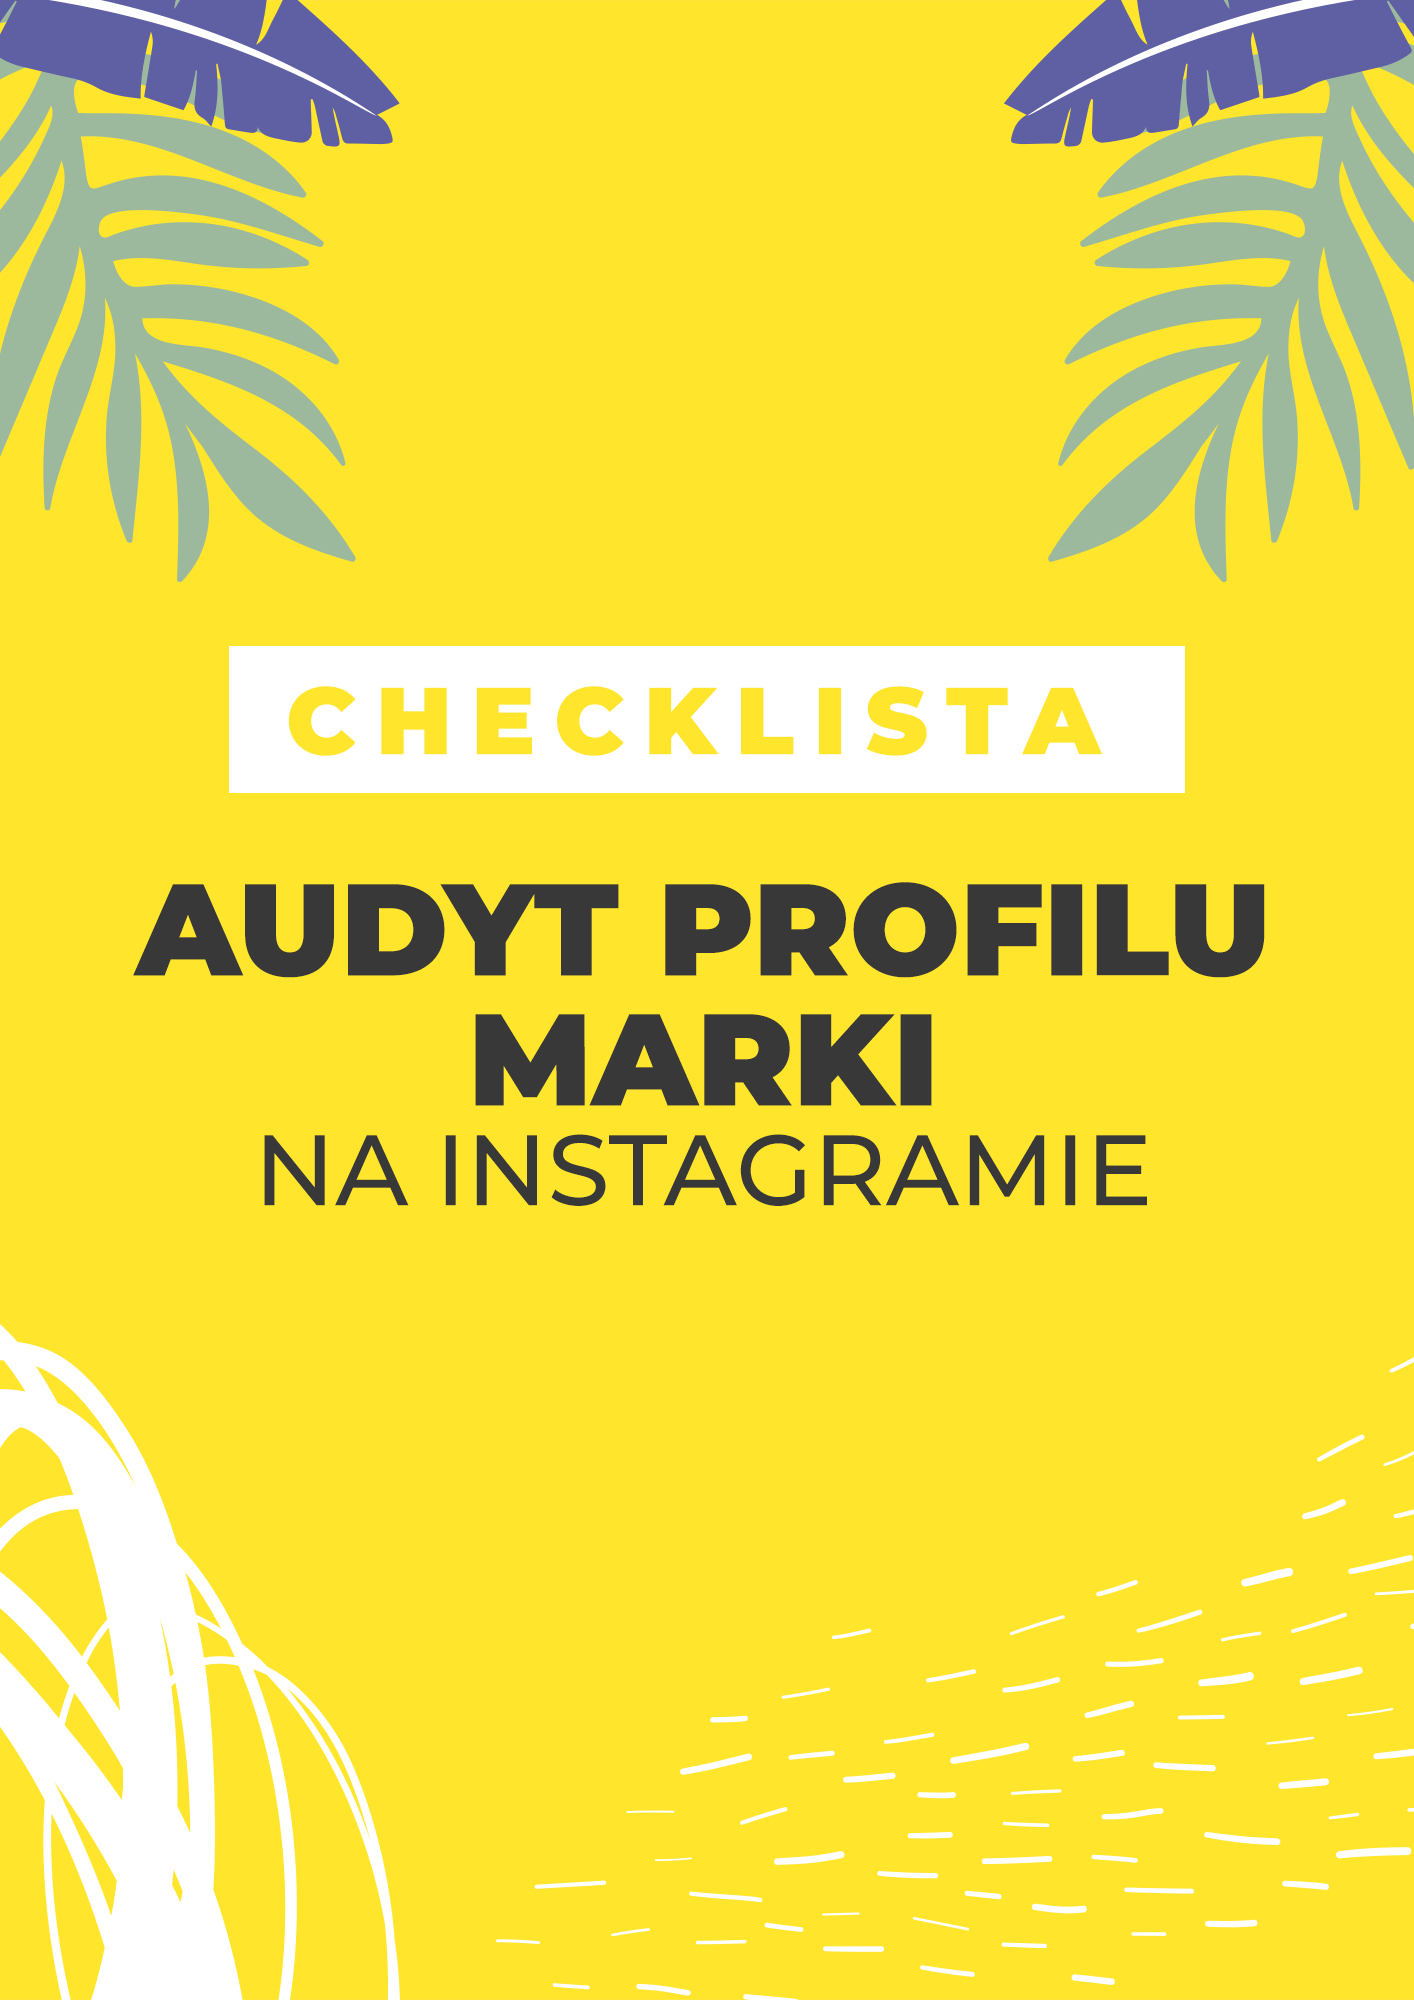 checklista audyt profilu marki na instagramie